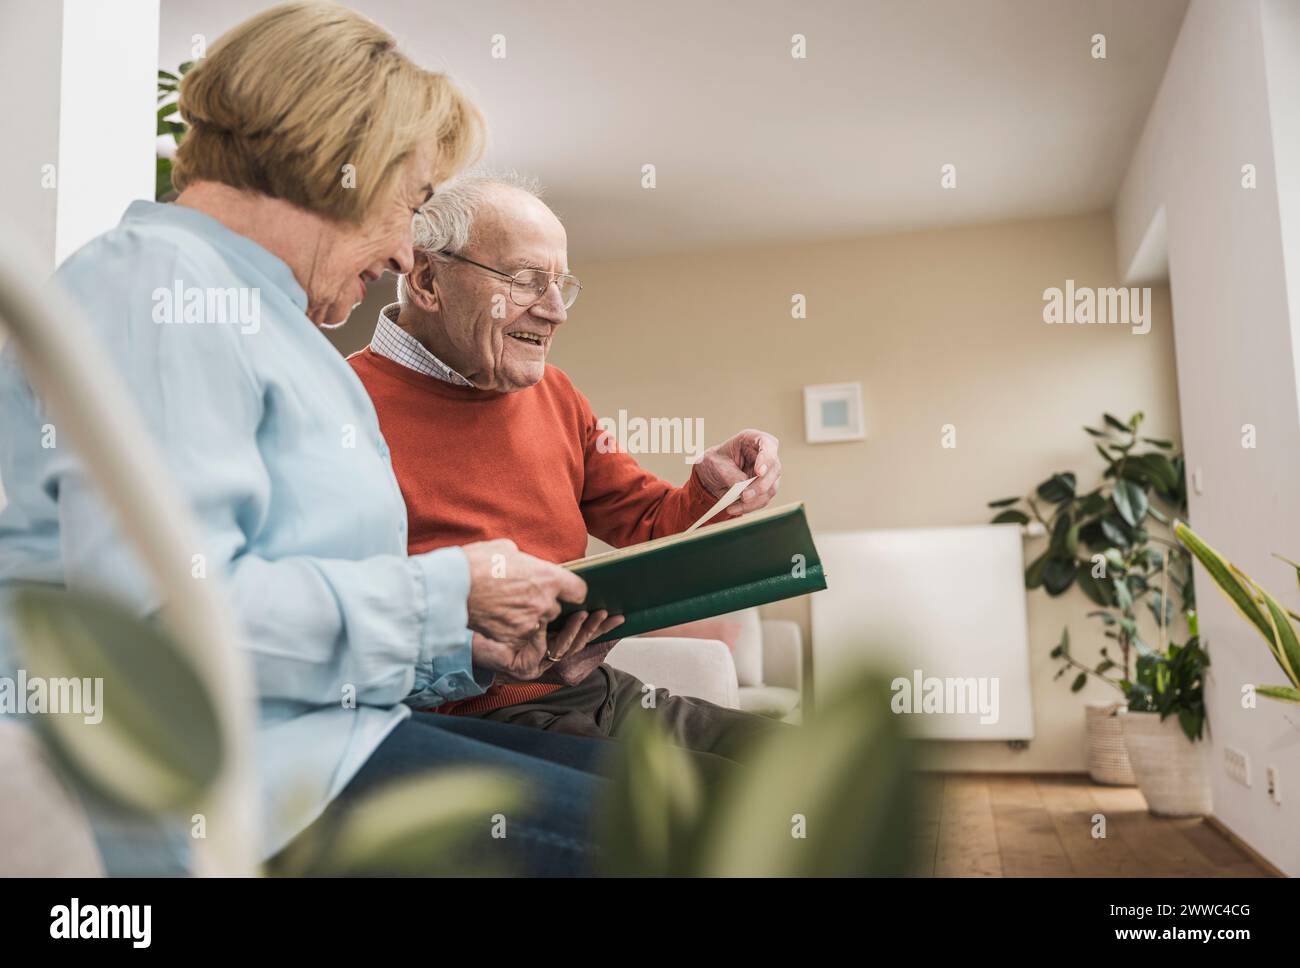 Lächelnde Seniorin und Mann, die zu Hause Fotos im Album anschauen Stockfoto